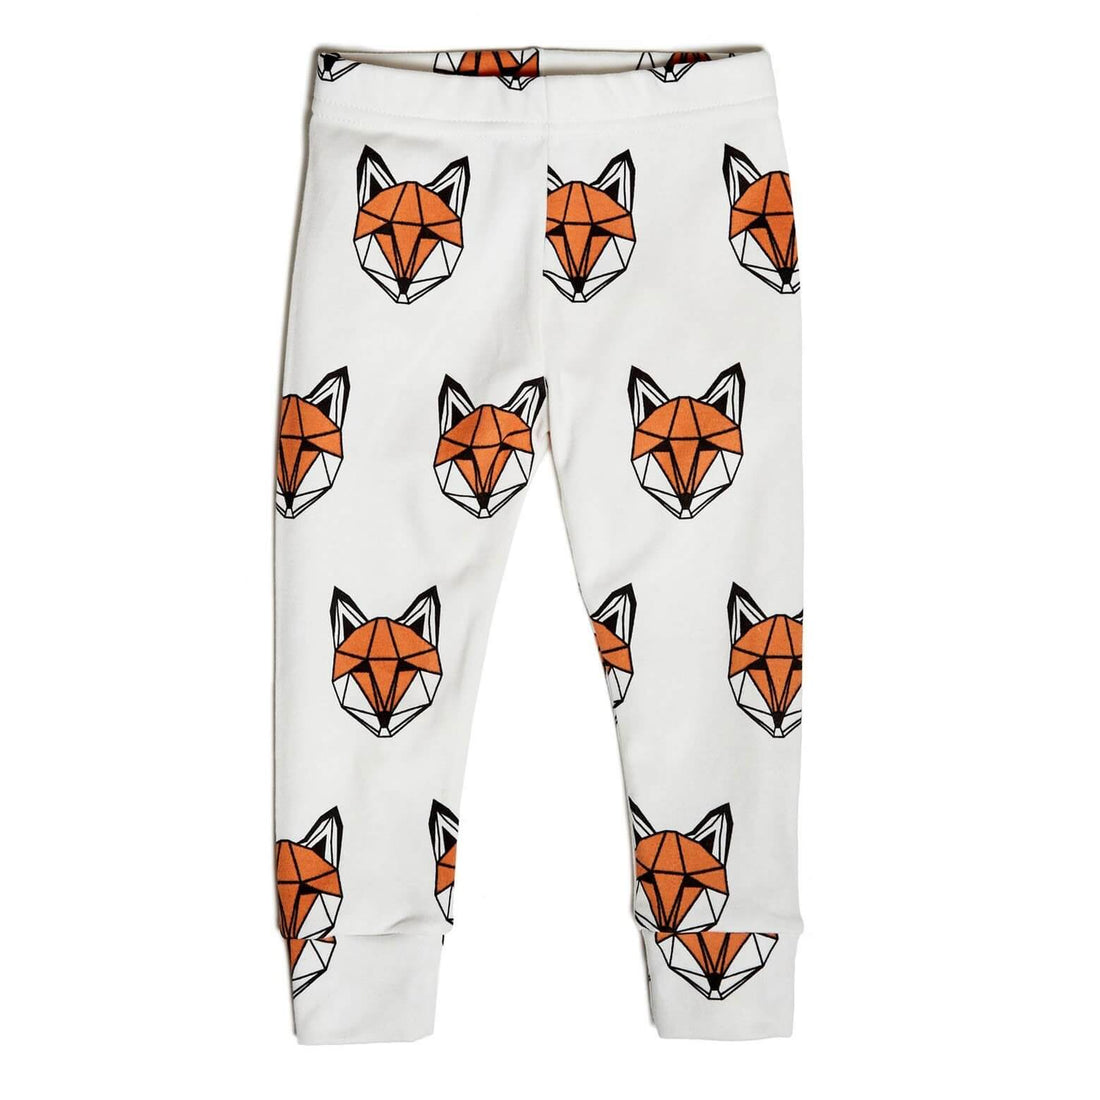 Just Call Me Fox leggings